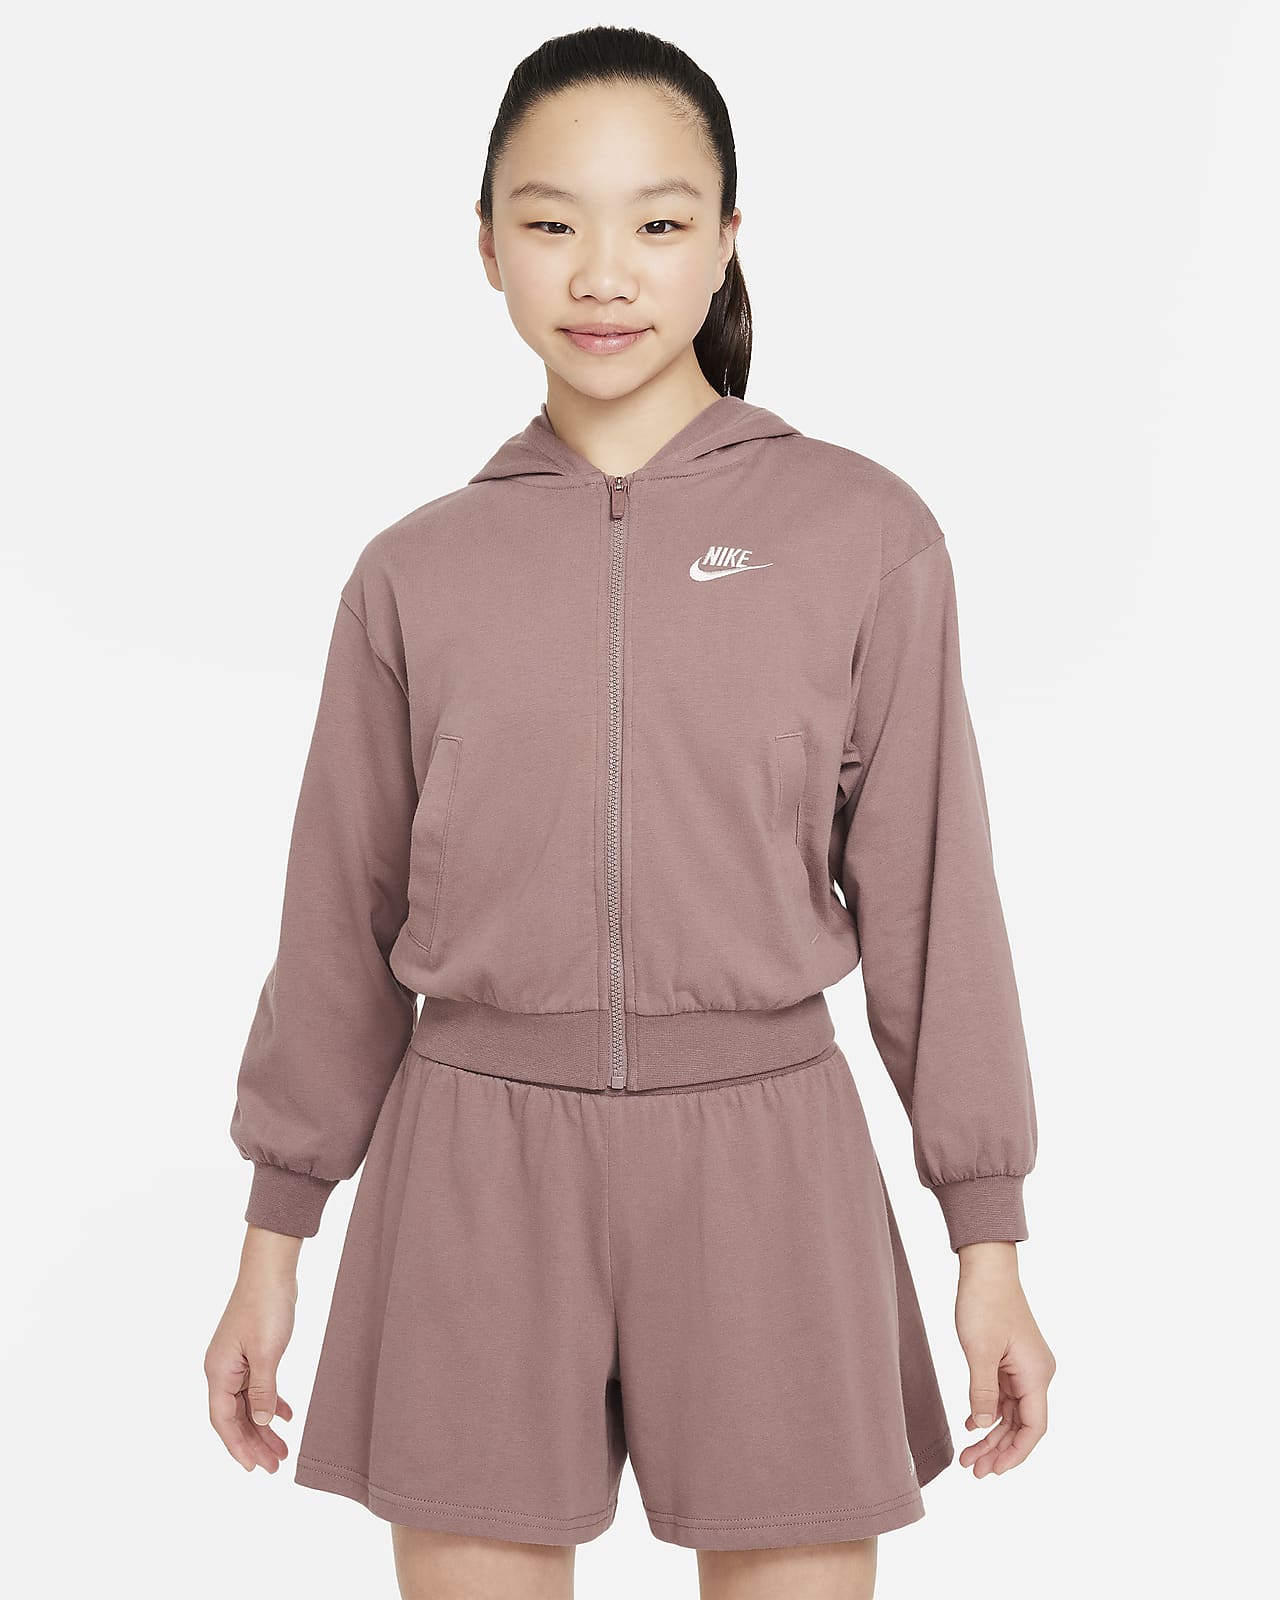 Nike Sportswear Hoodie mit durchgehendem Reißverschluss für ältere Kinder (Mädchen)